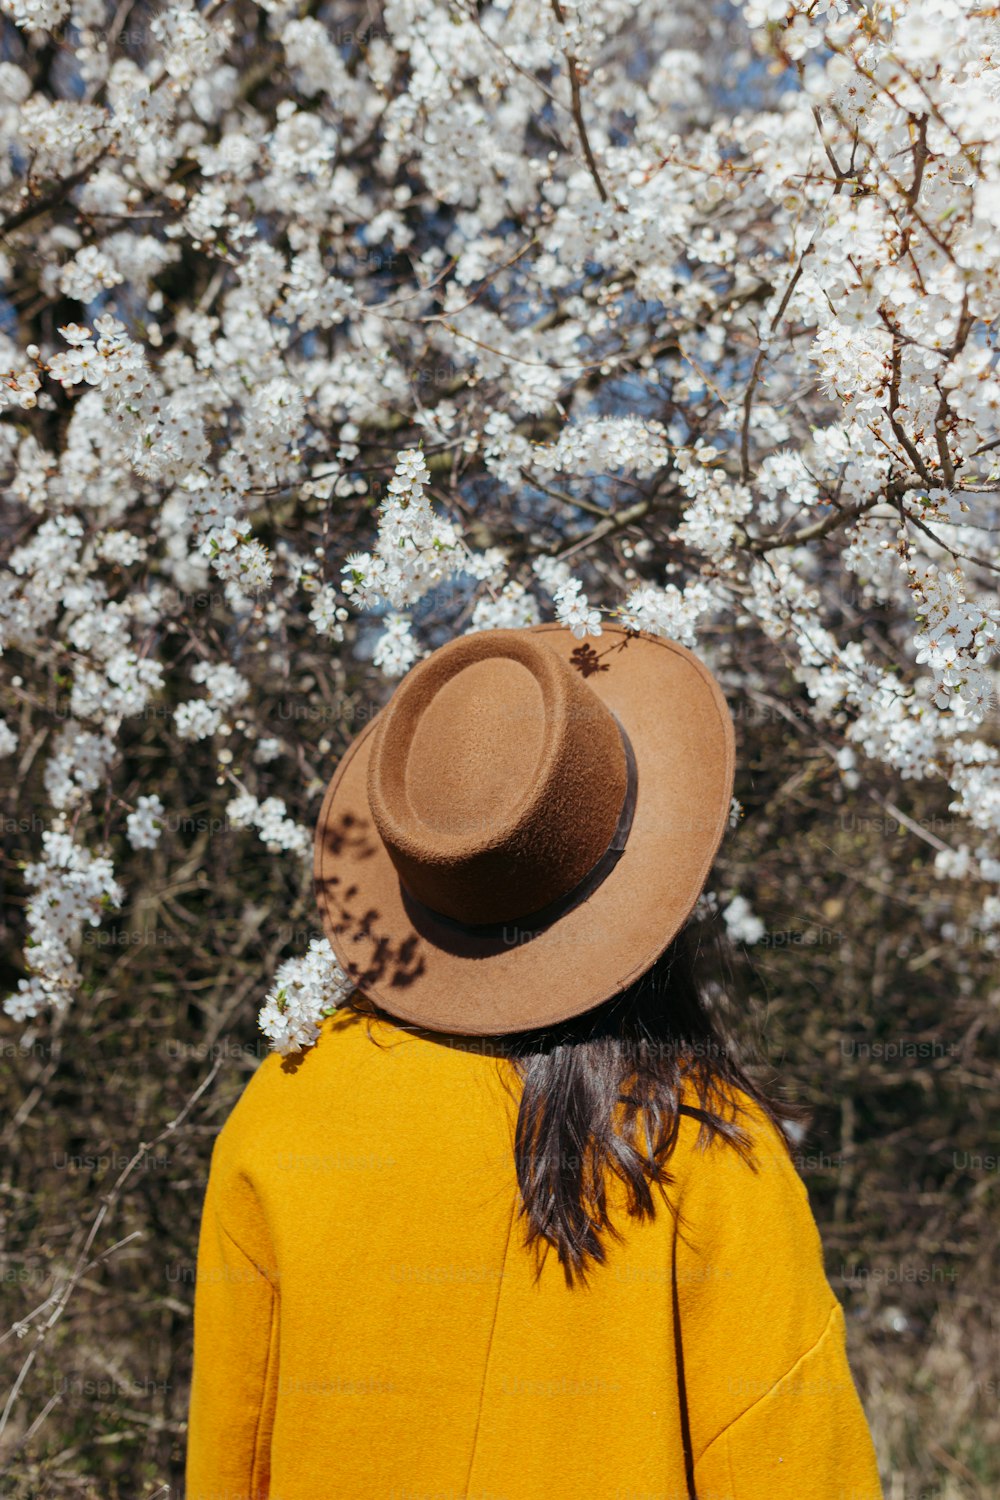 Mujer elegante con sombrero posando sensualmente entre ramas de cerezo en flor en un día soleado de primavera, vista posterior. Momento de calma y tranquilidad. Mujer de moda en chaqueta amarilla abrazando en flores blancas